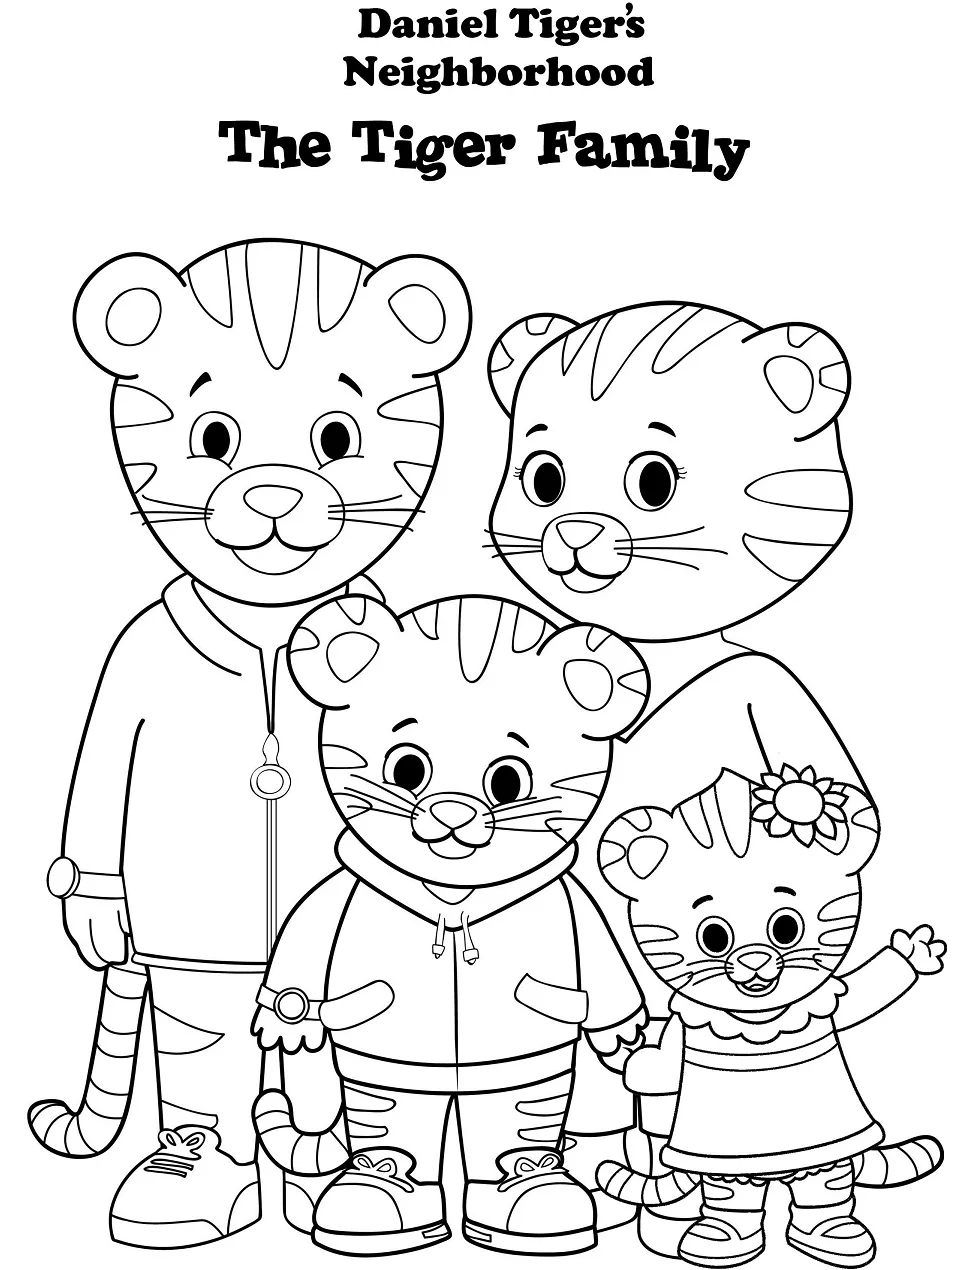 Daniel Tiger Family